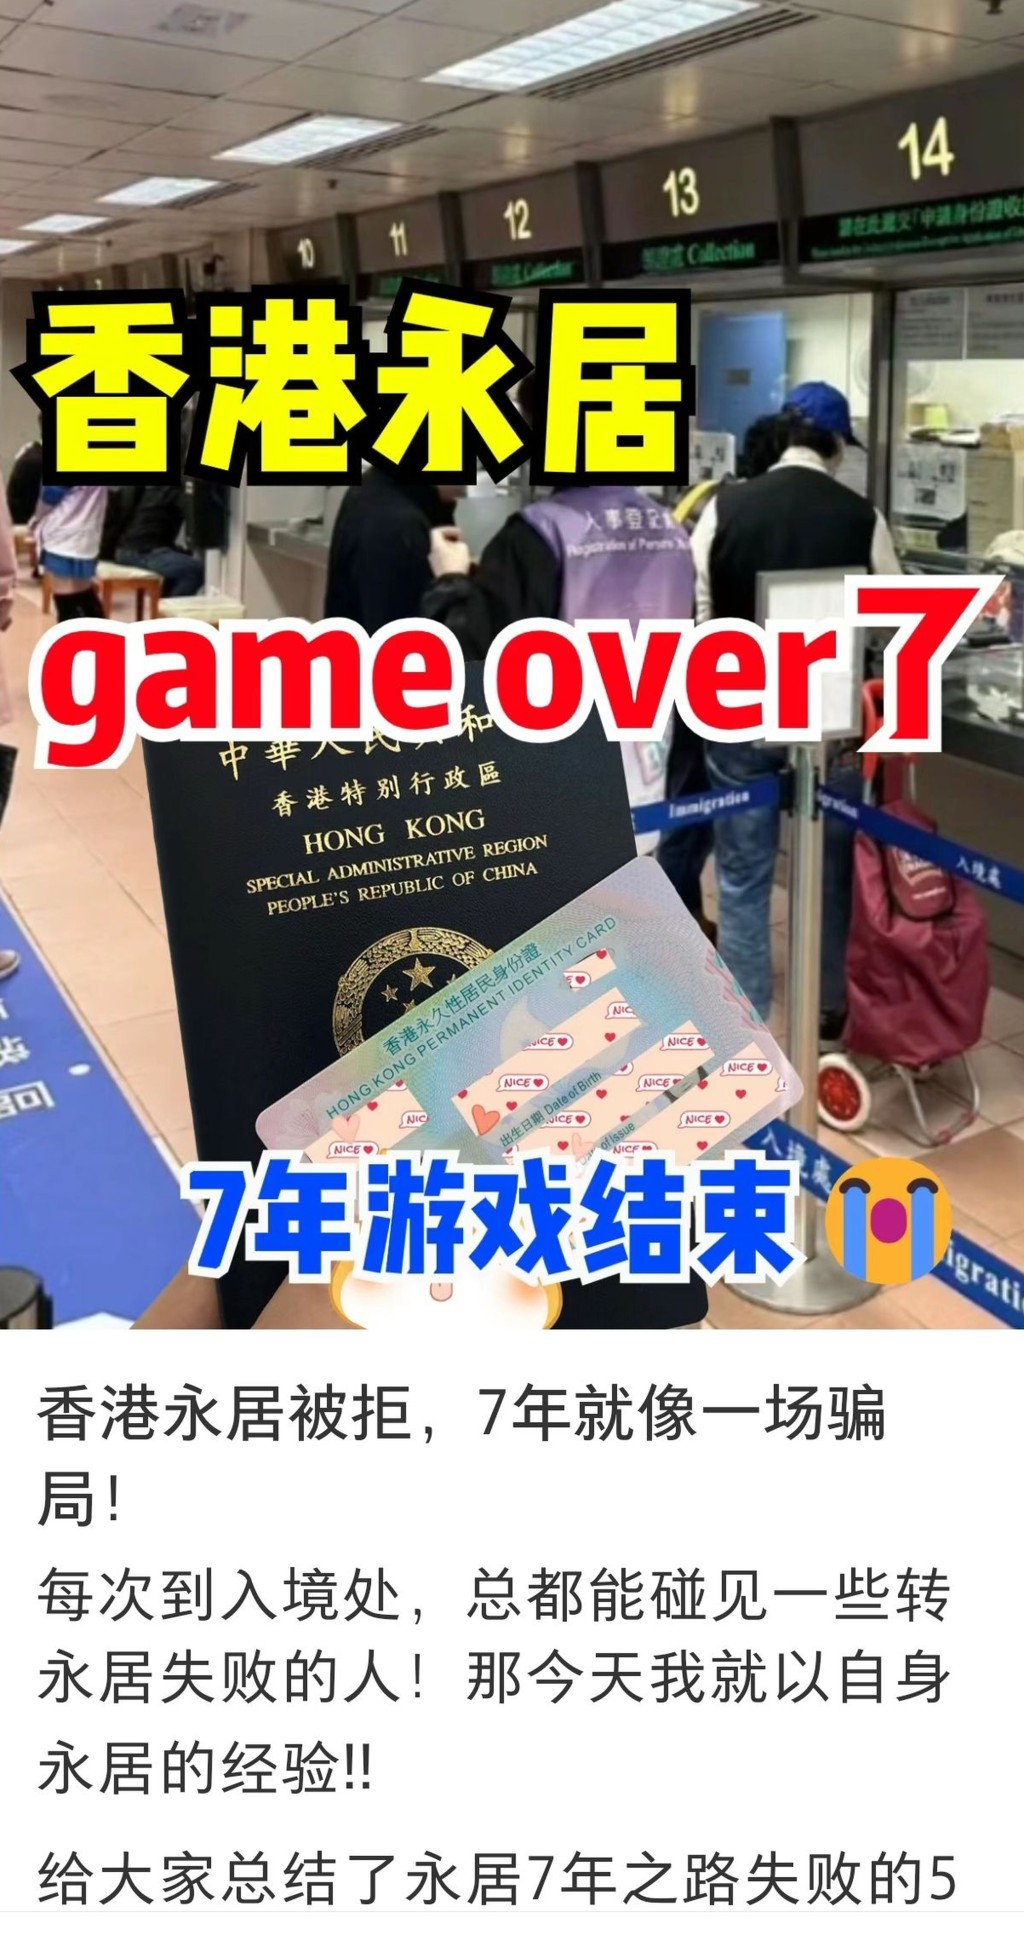  有取得「優才」身份7年的內地人申請香港永久性居民身份證失敗，在網上吐苦水。 網上圖片